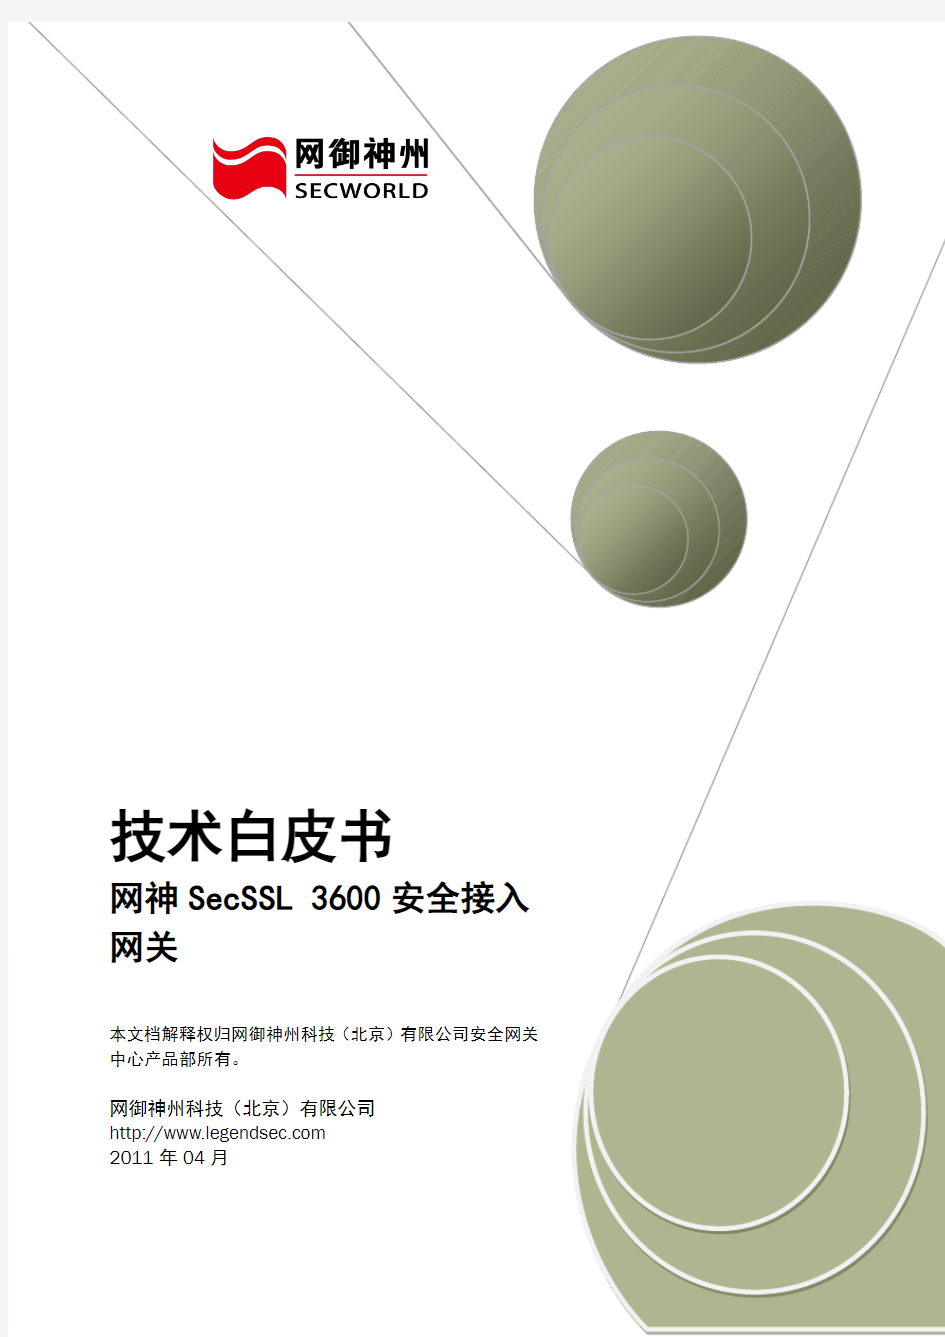 网神SecSSL 3600安全接入网关技术白皮书[V6.4.1]